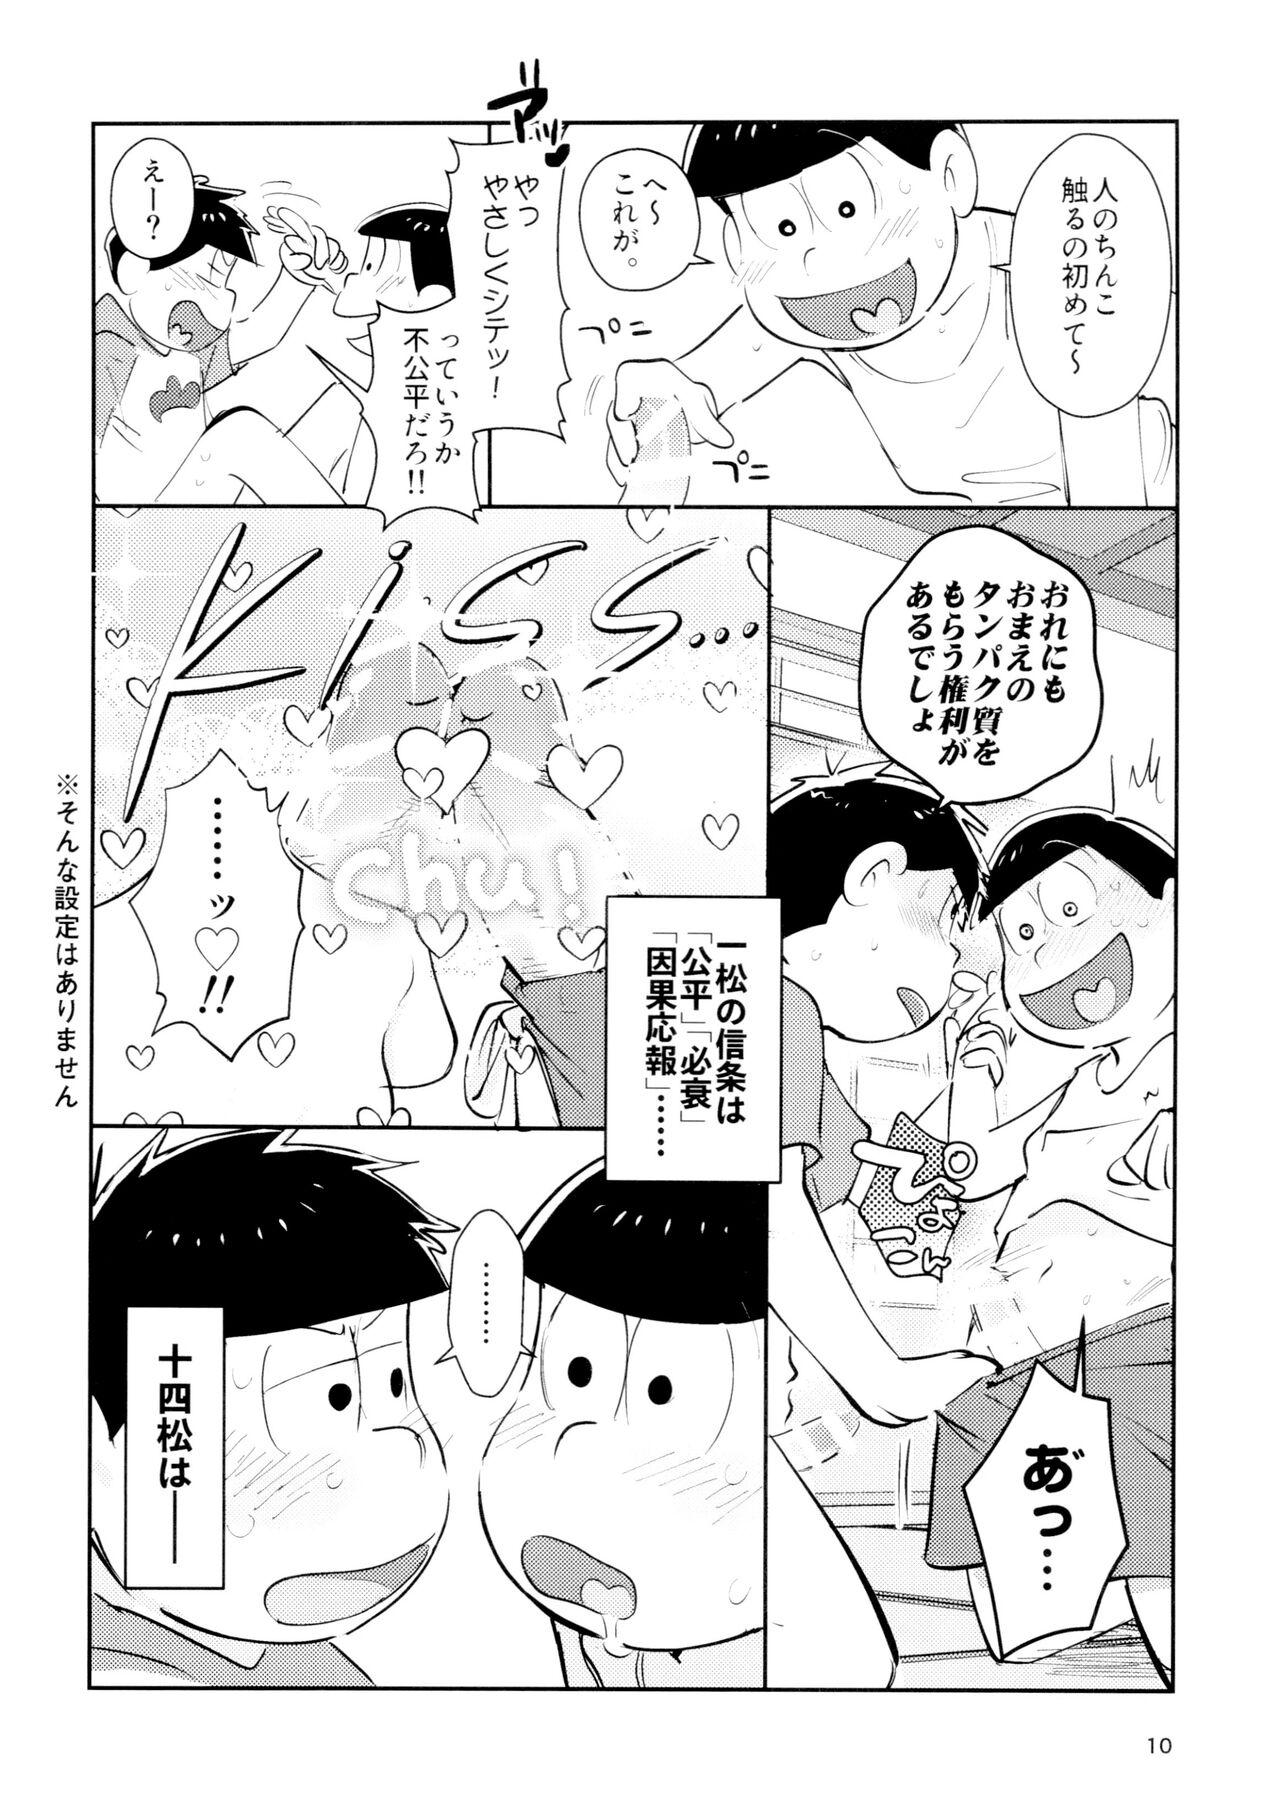 Ex Girlfriend Zatsu Shinkiro's - Osomatsu san Twistys - Page 10